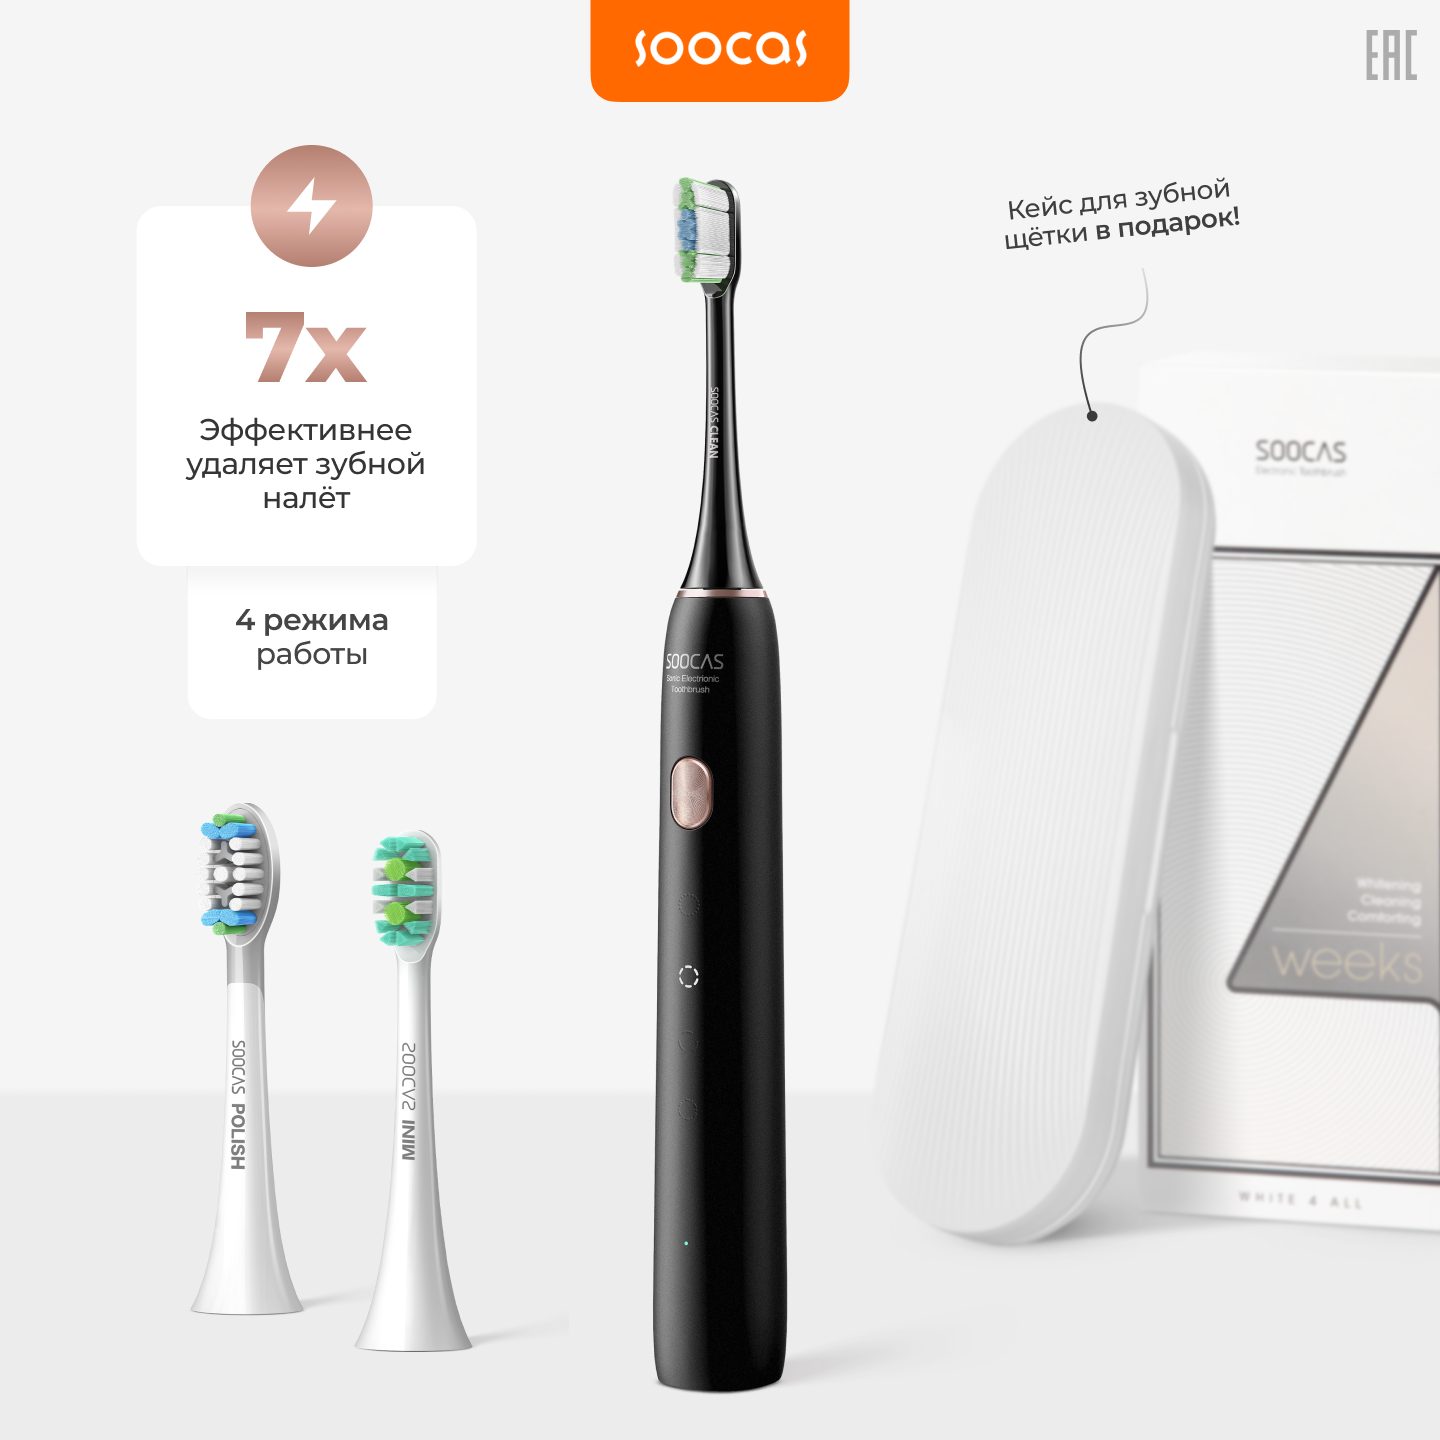 Электрическая зубная щетка Soocas X3U (Ростест), три насадки, звуковая, 4 режима очистки, черный